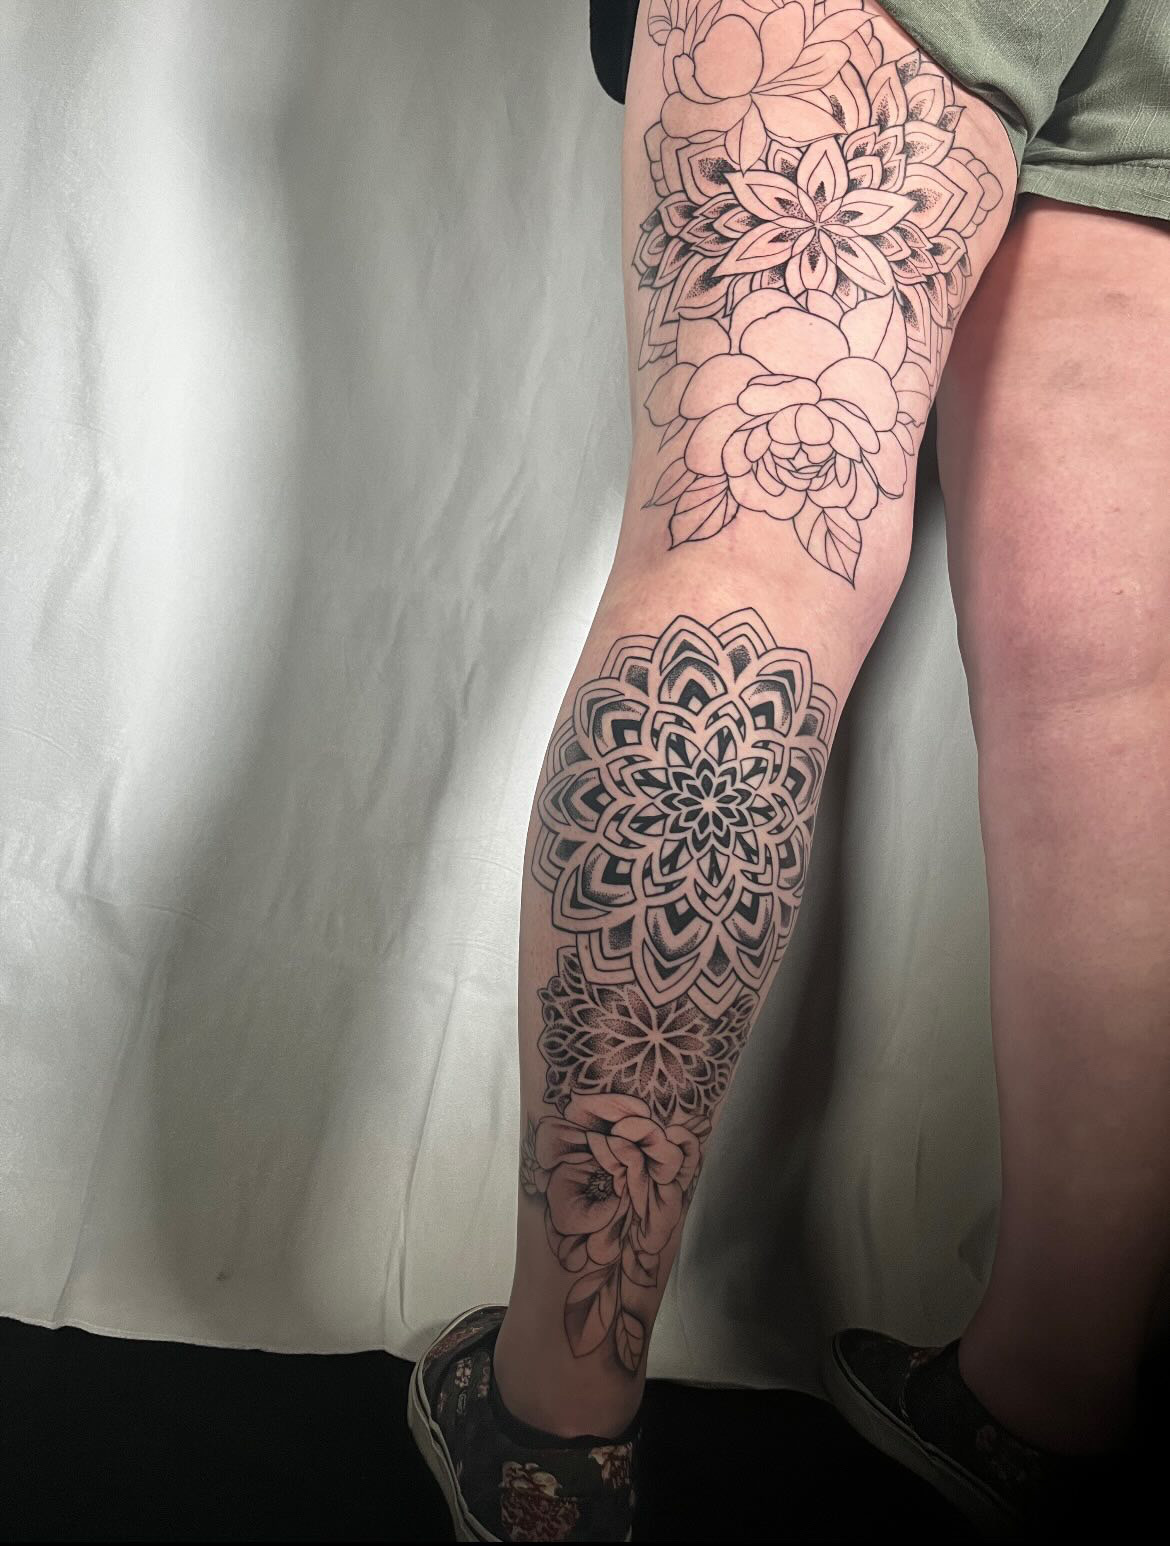 Fine line leg tattoo of flowers by tattoo artist Alessandra Clivio.